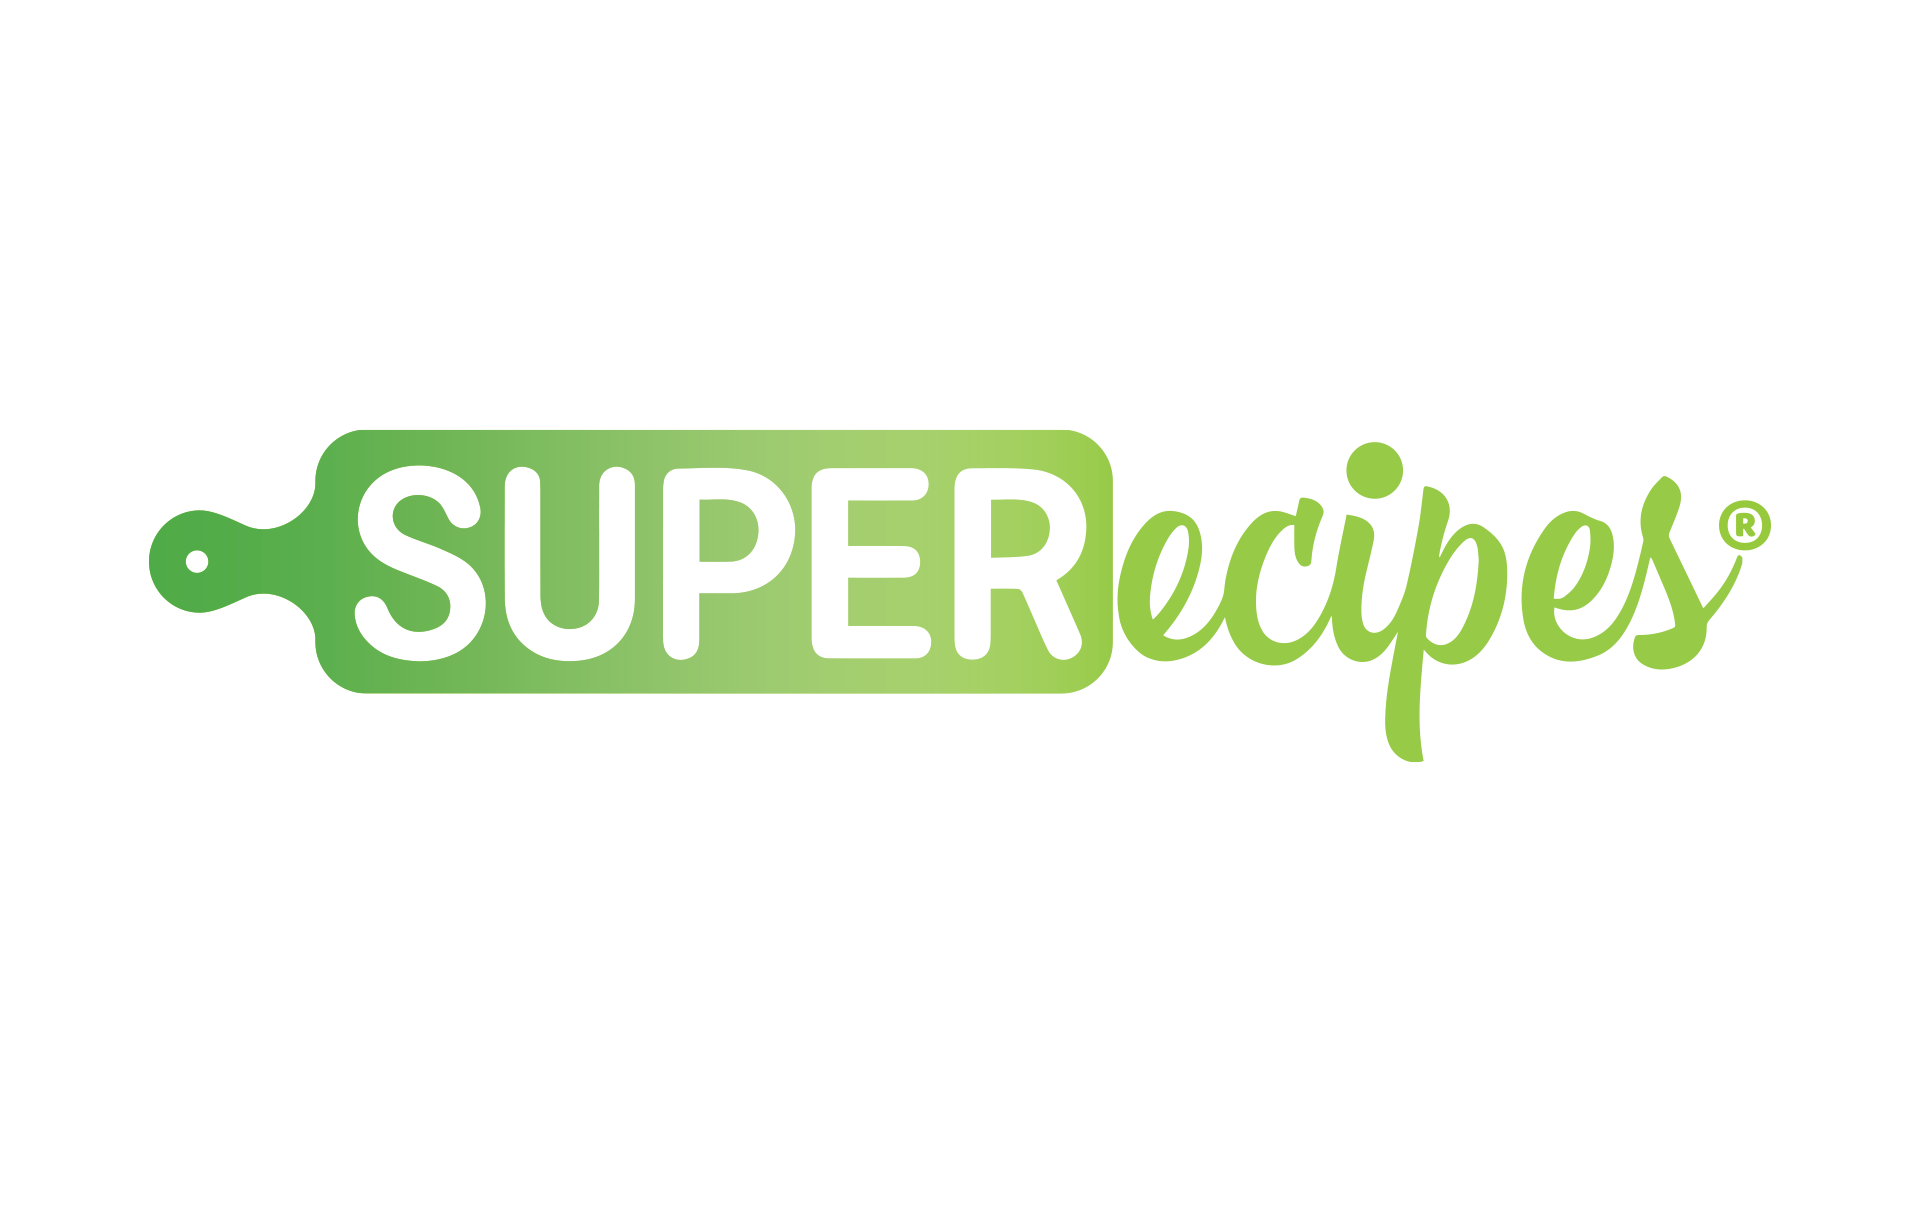 Superecipes Logo by Creatibly's Scott Luscombe